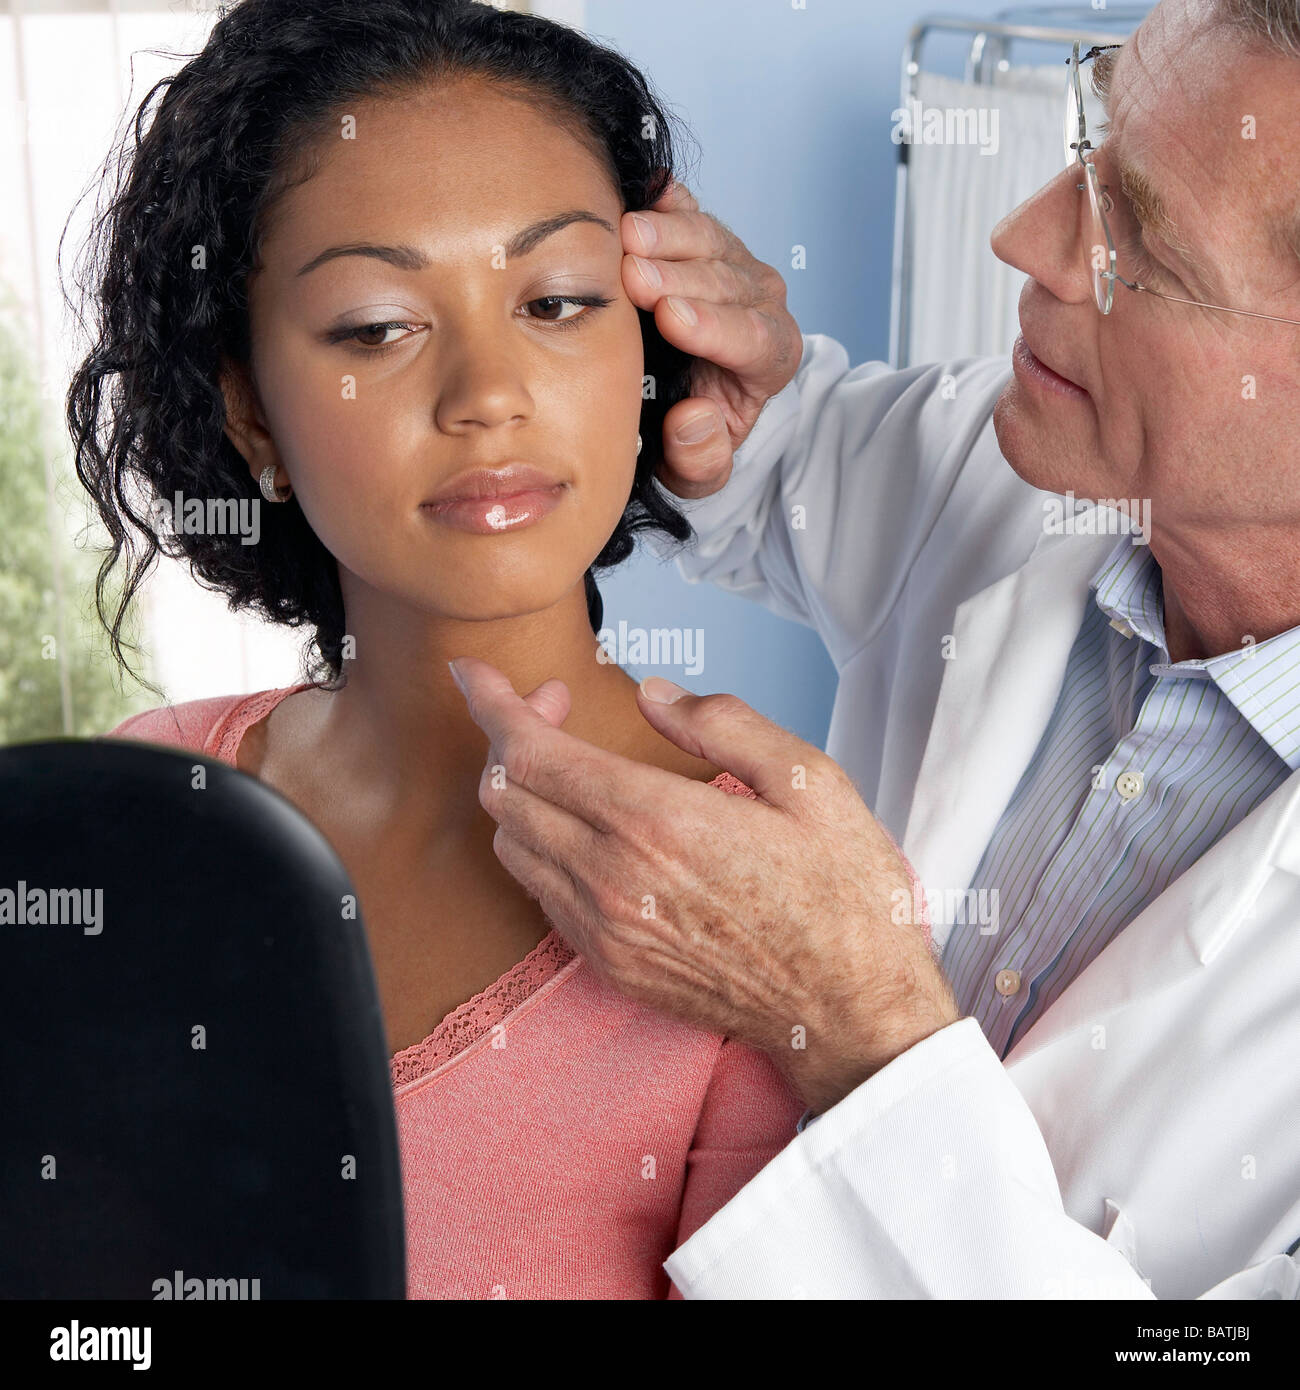 Chirurgia estetica. Consulente di esaminare il volto di una giovane donna contemplando la chirurgia estetica. Foto Stock